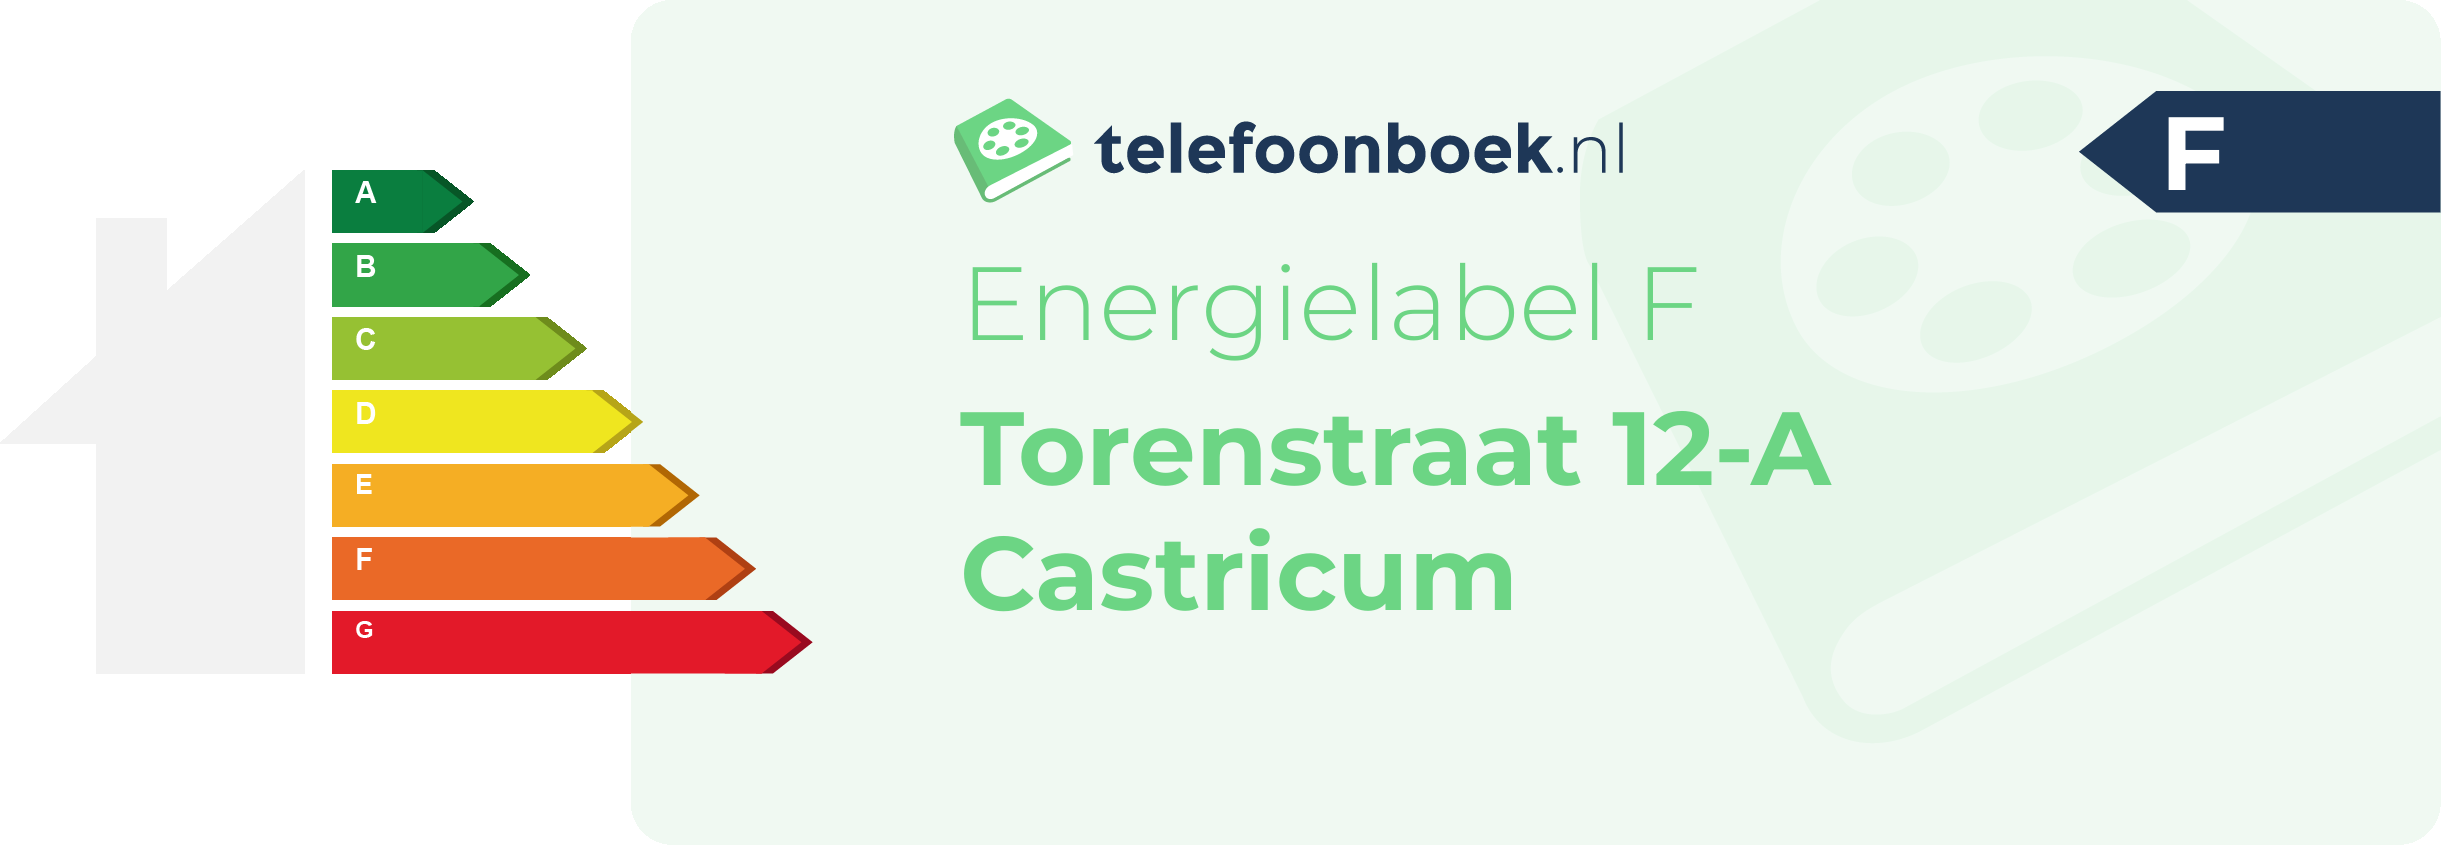 Energielabel Torenstraat 12-A Castricum